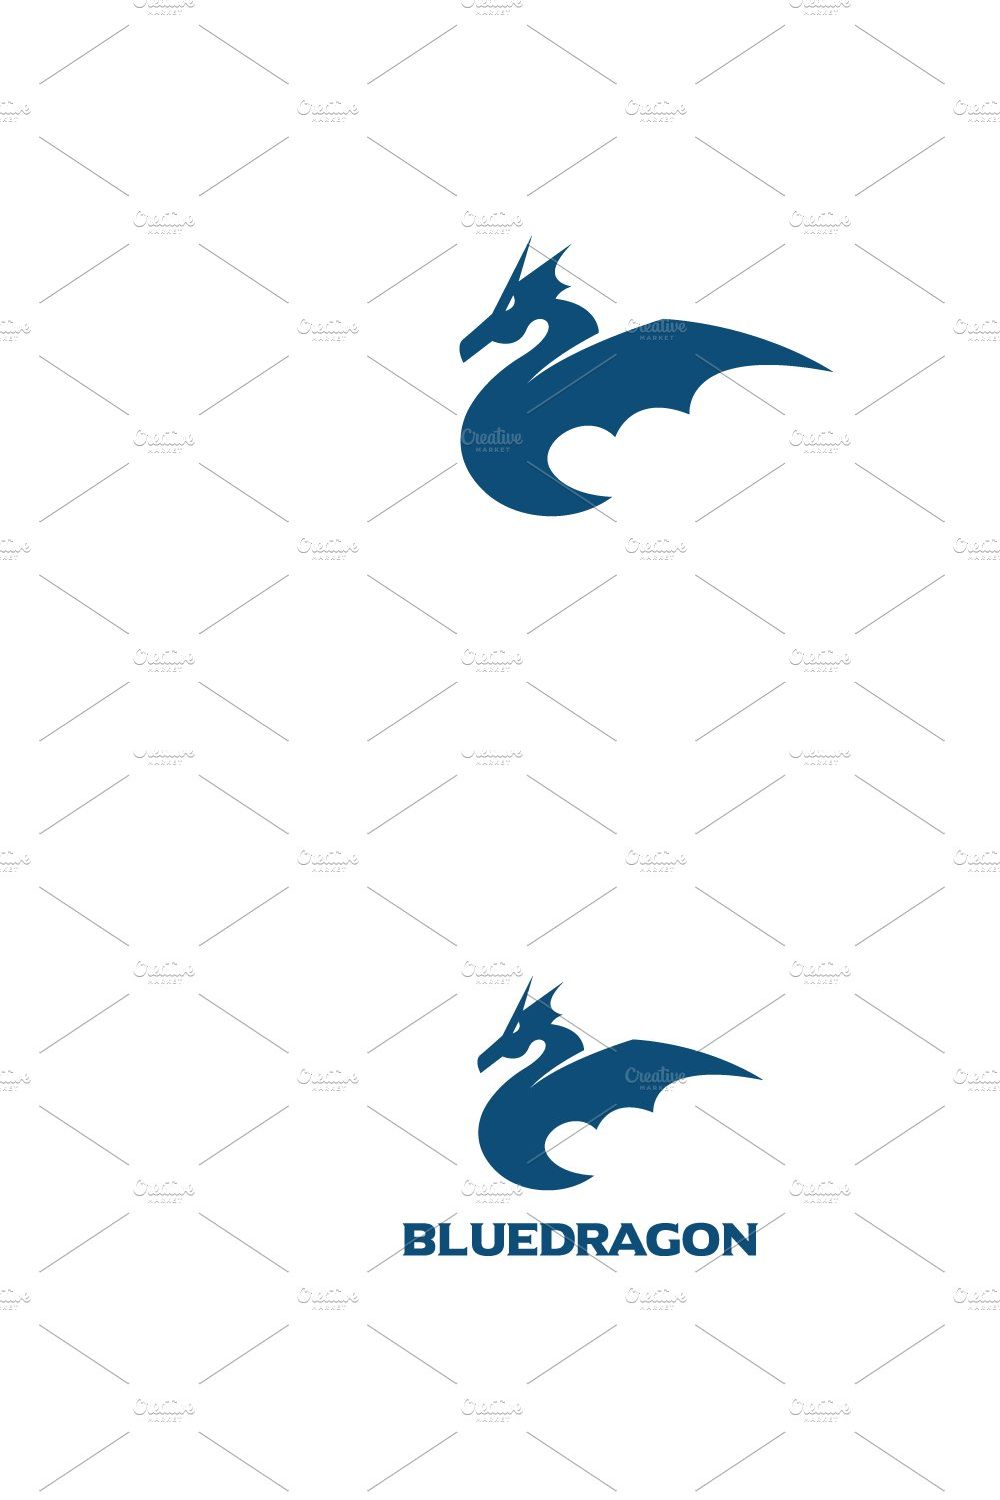 Blue Dragon Logo pinterest preview image.